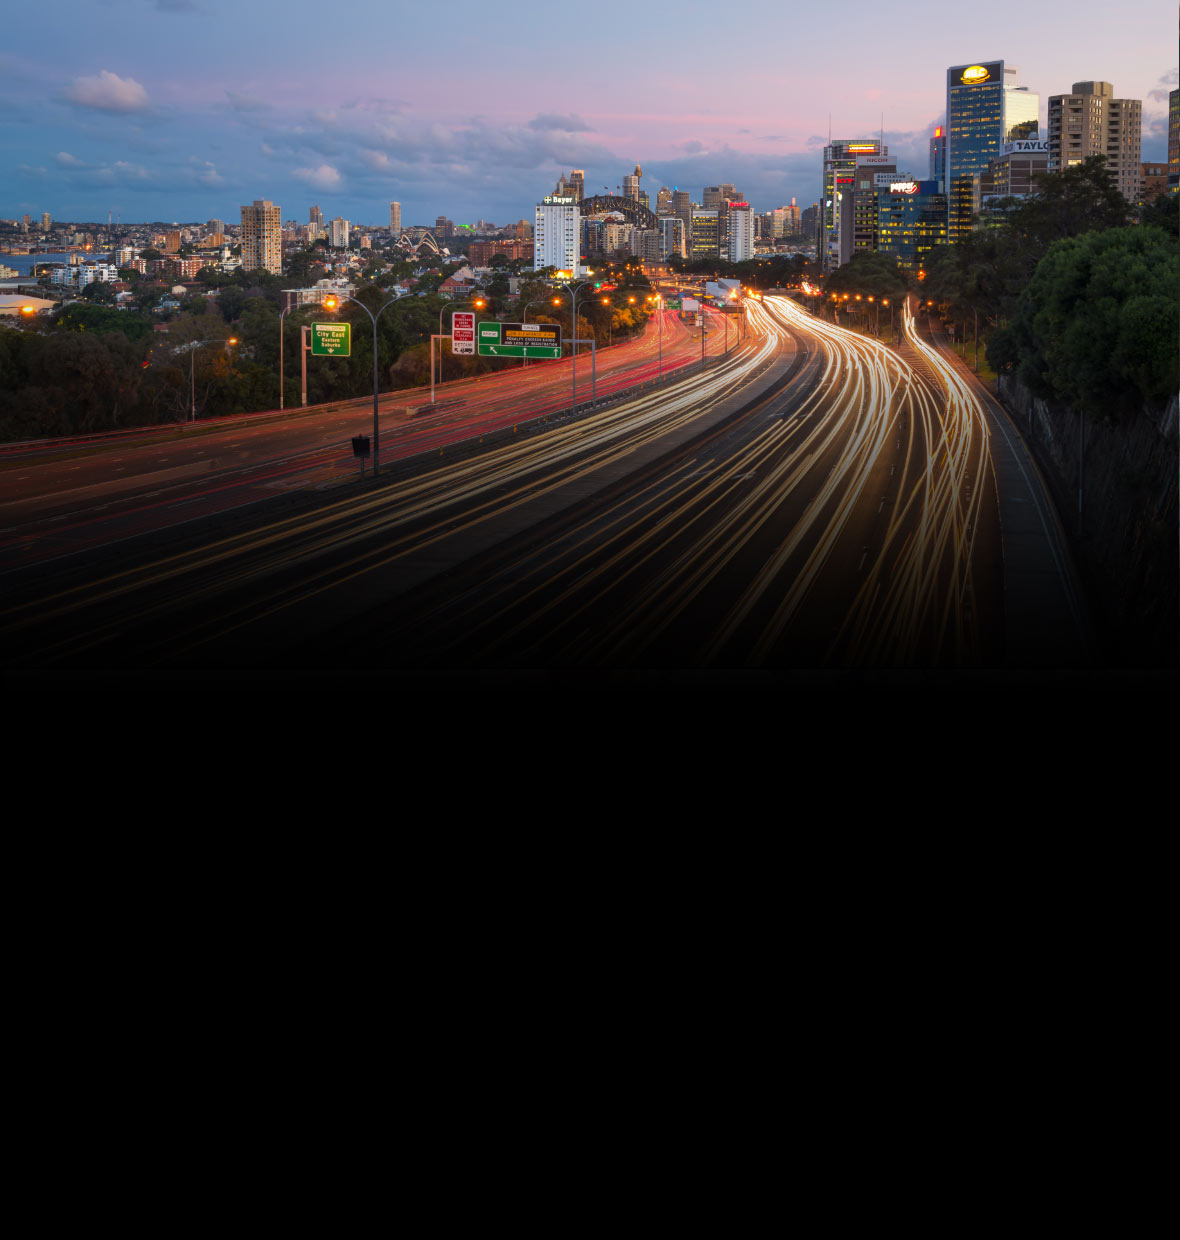 timelapse of North Sydney at dusk